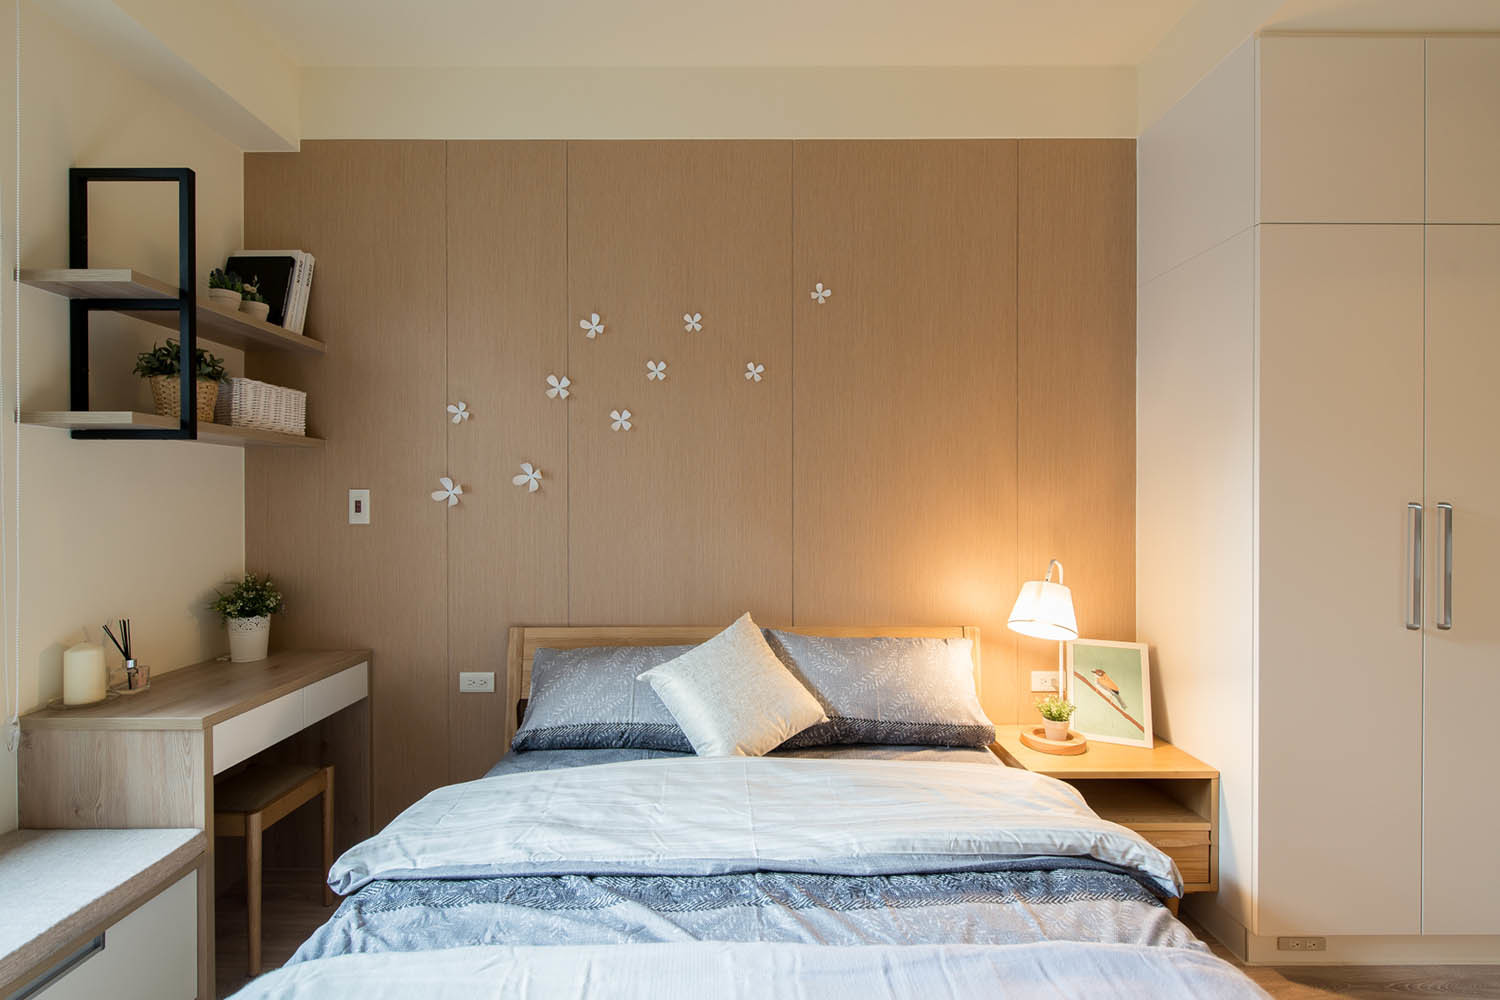 北歐風臥室設計木作造型床頭搭配弱黃光營造舒適休憩感